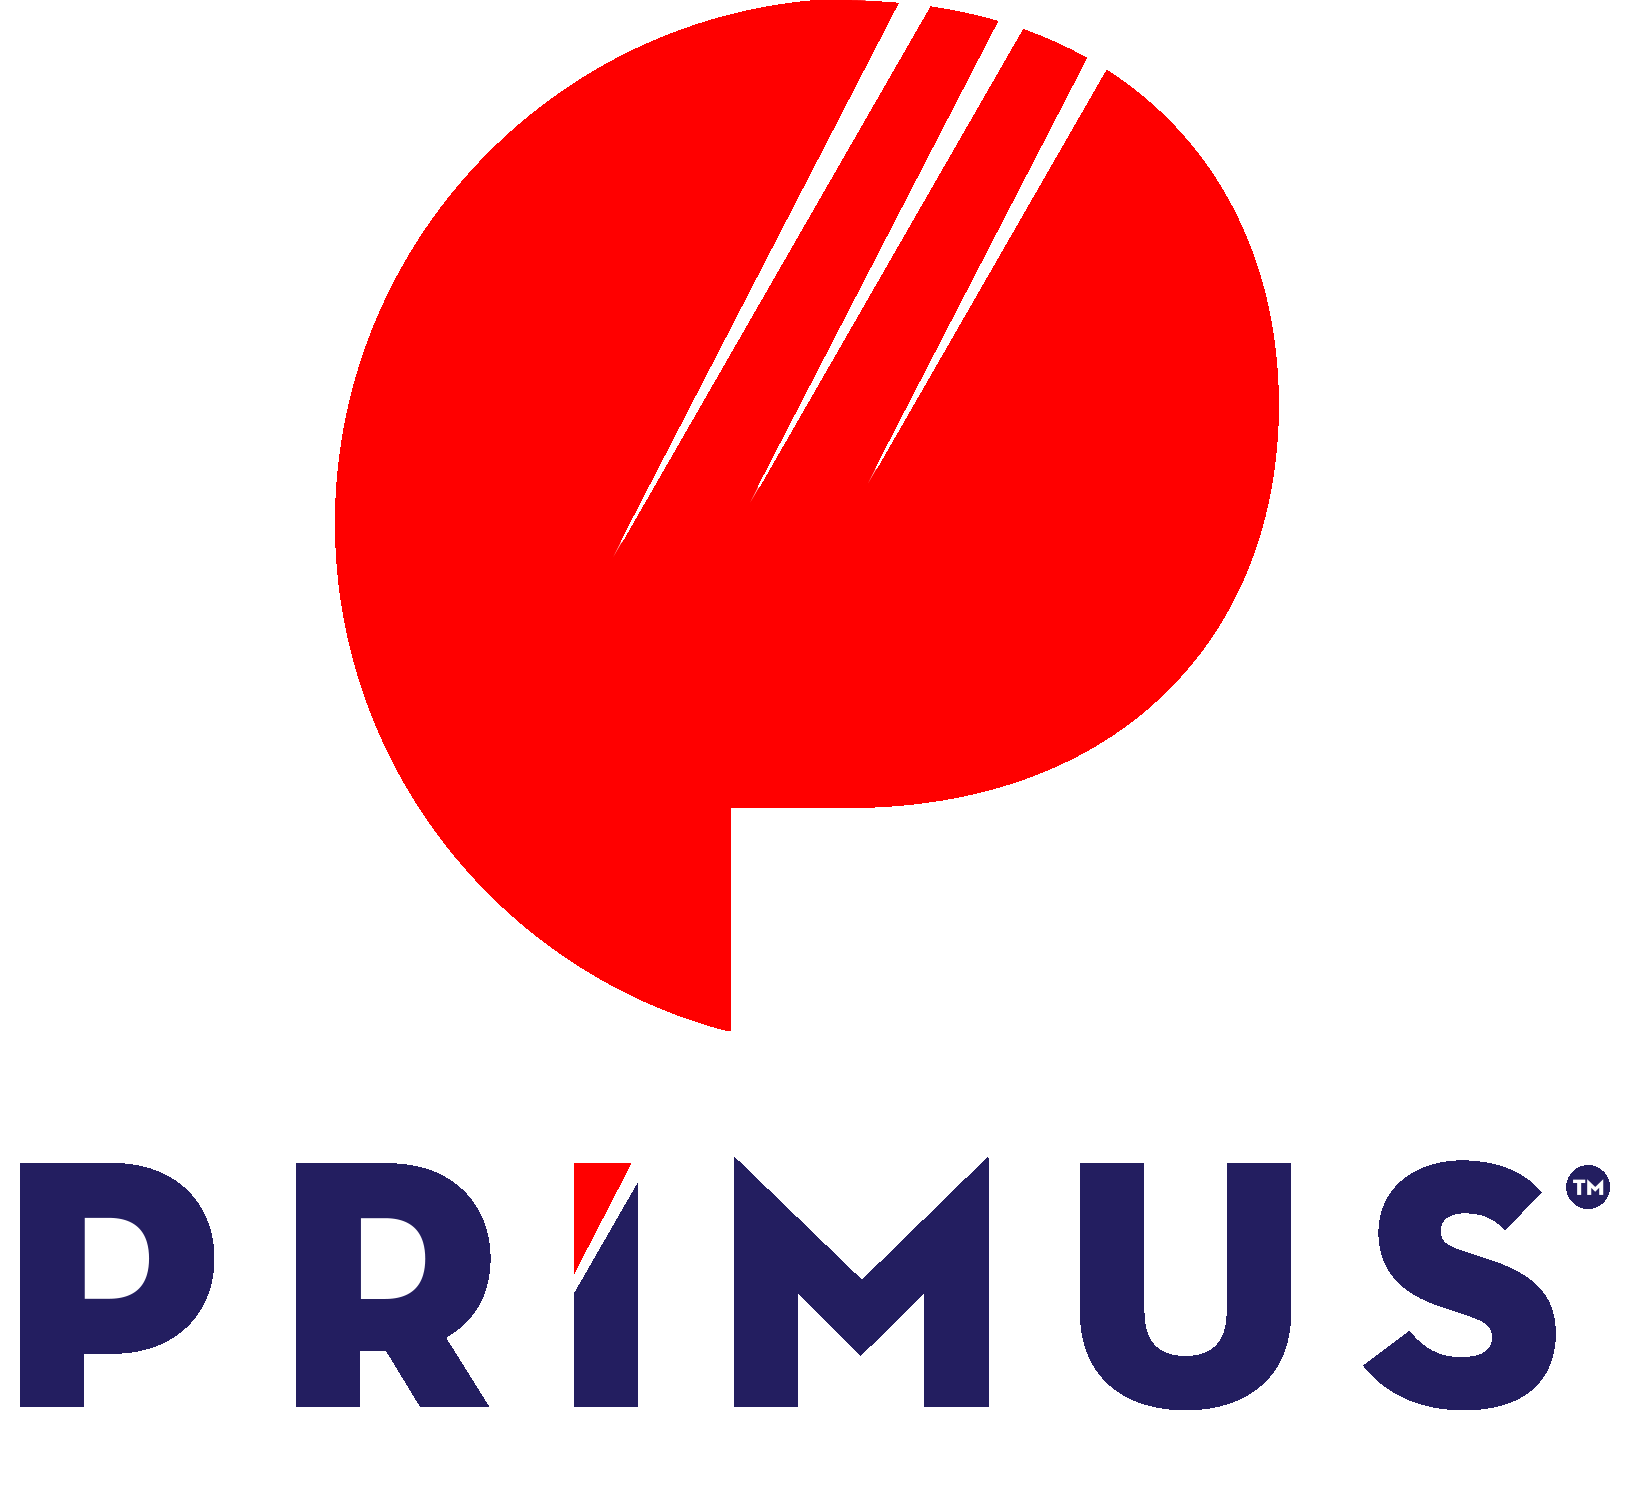 Primus logo-1